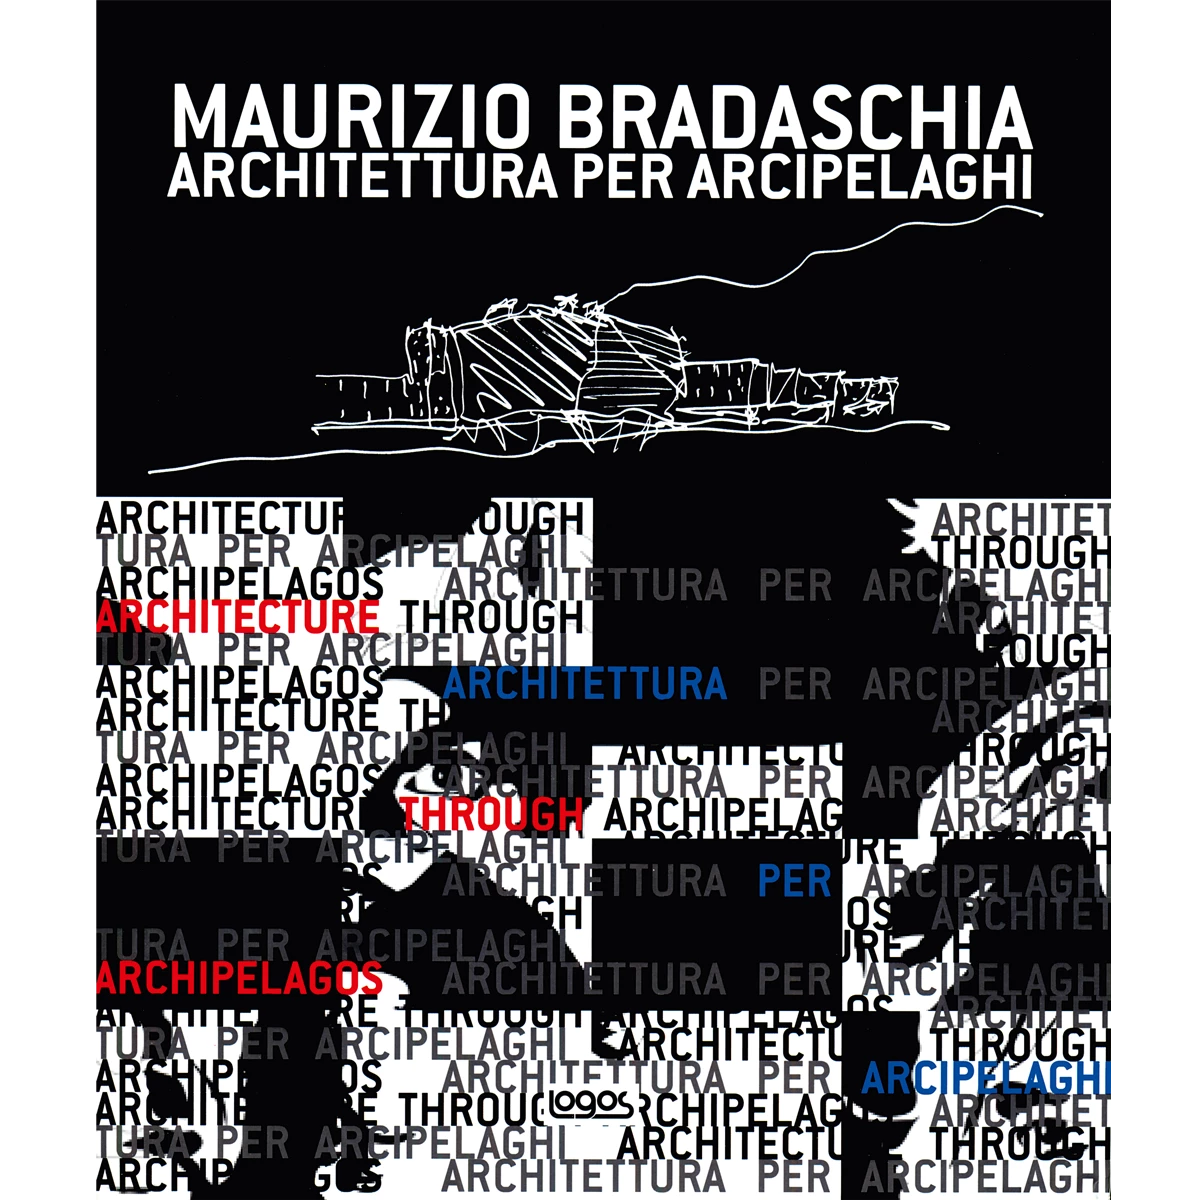 Maurizio Bradaschia: Architettura per Arcipelaghi